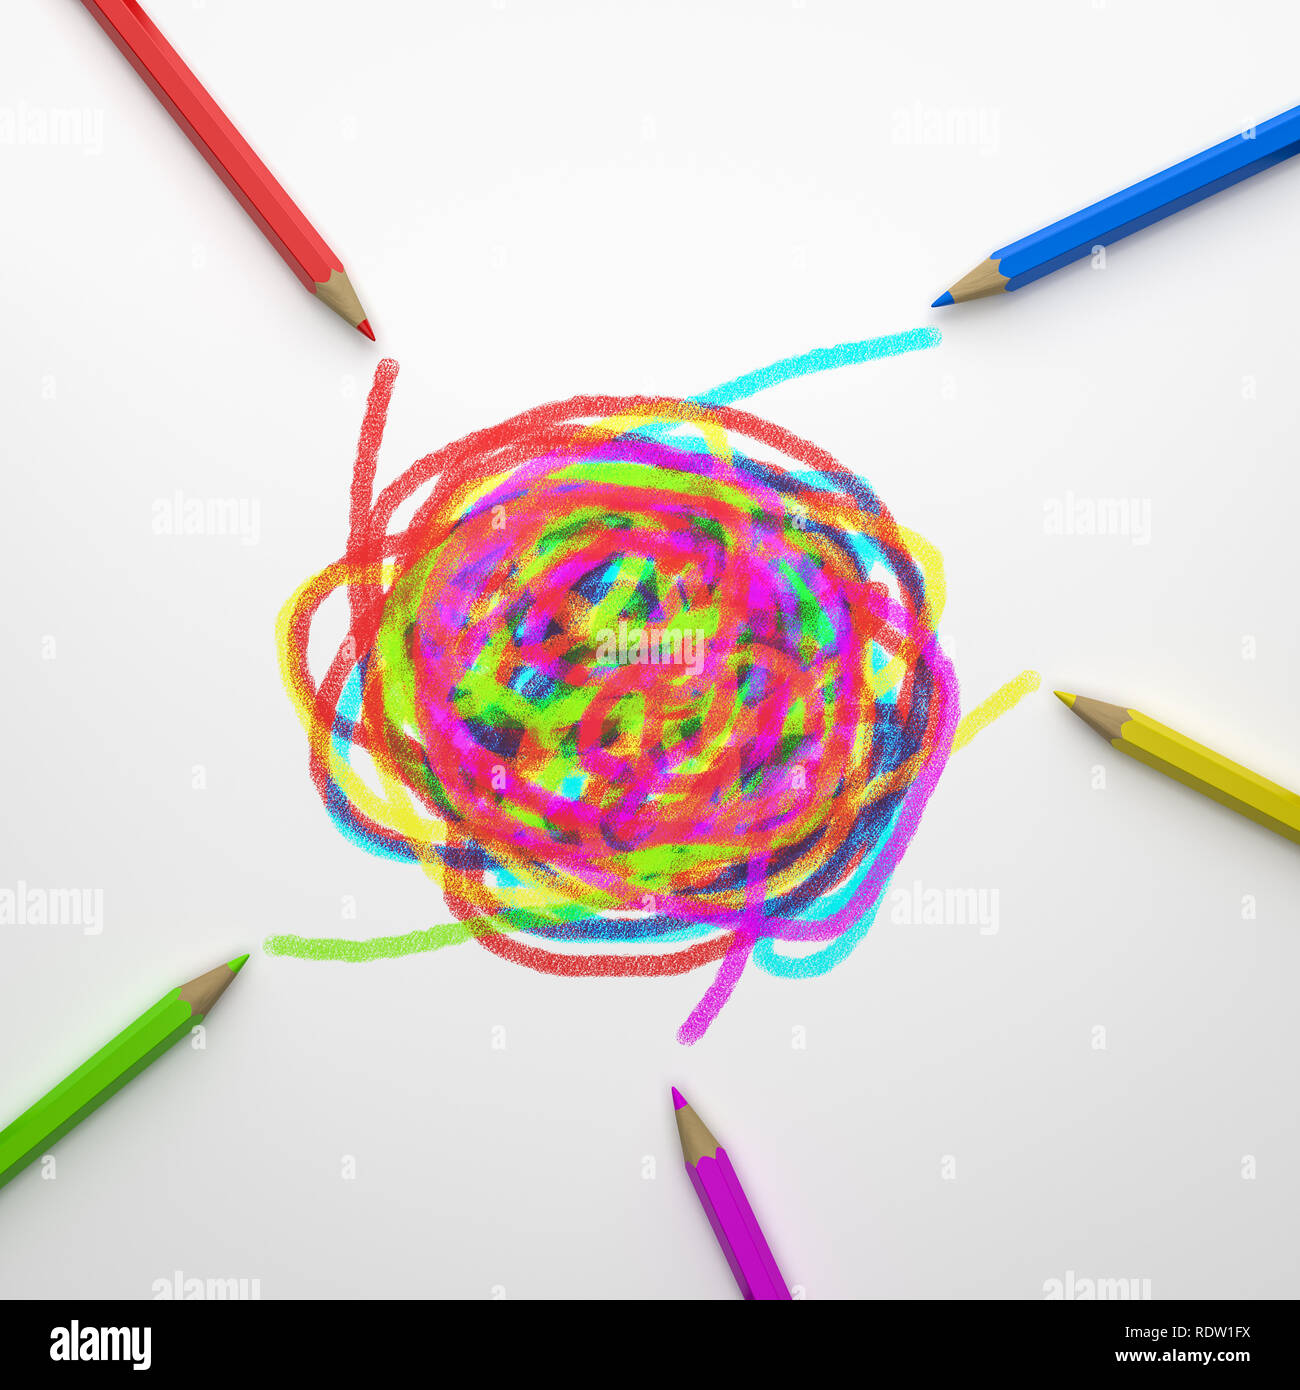 Dessin crayons en bois coloré ensemble sur fond blanc 3D Illustration, concept de réflexion Banque D'Images